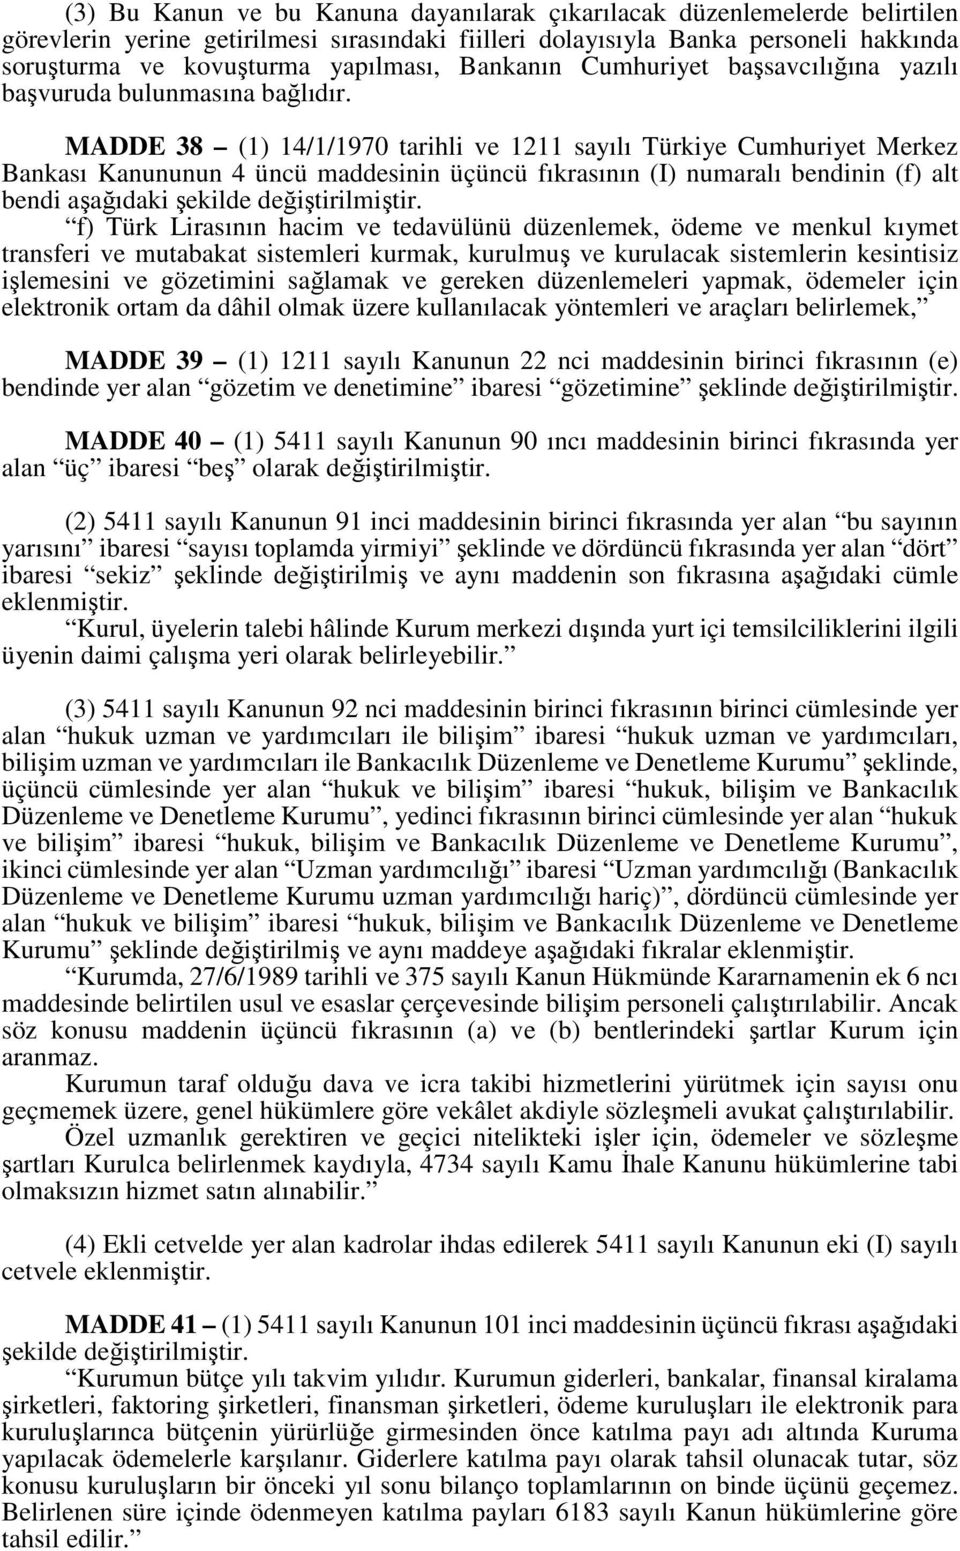 MADDE 38 (1) 14/1/1970 tarihli ve 1211 sayılı Türkiye Cumhuriyet Merkez Bankası Kanununun 4 üncü maddesinin üçüncü fıkrasının (I) numaralı bendinin (f) alt bendi aşağıdaki şekilde değiştirilmiştir.